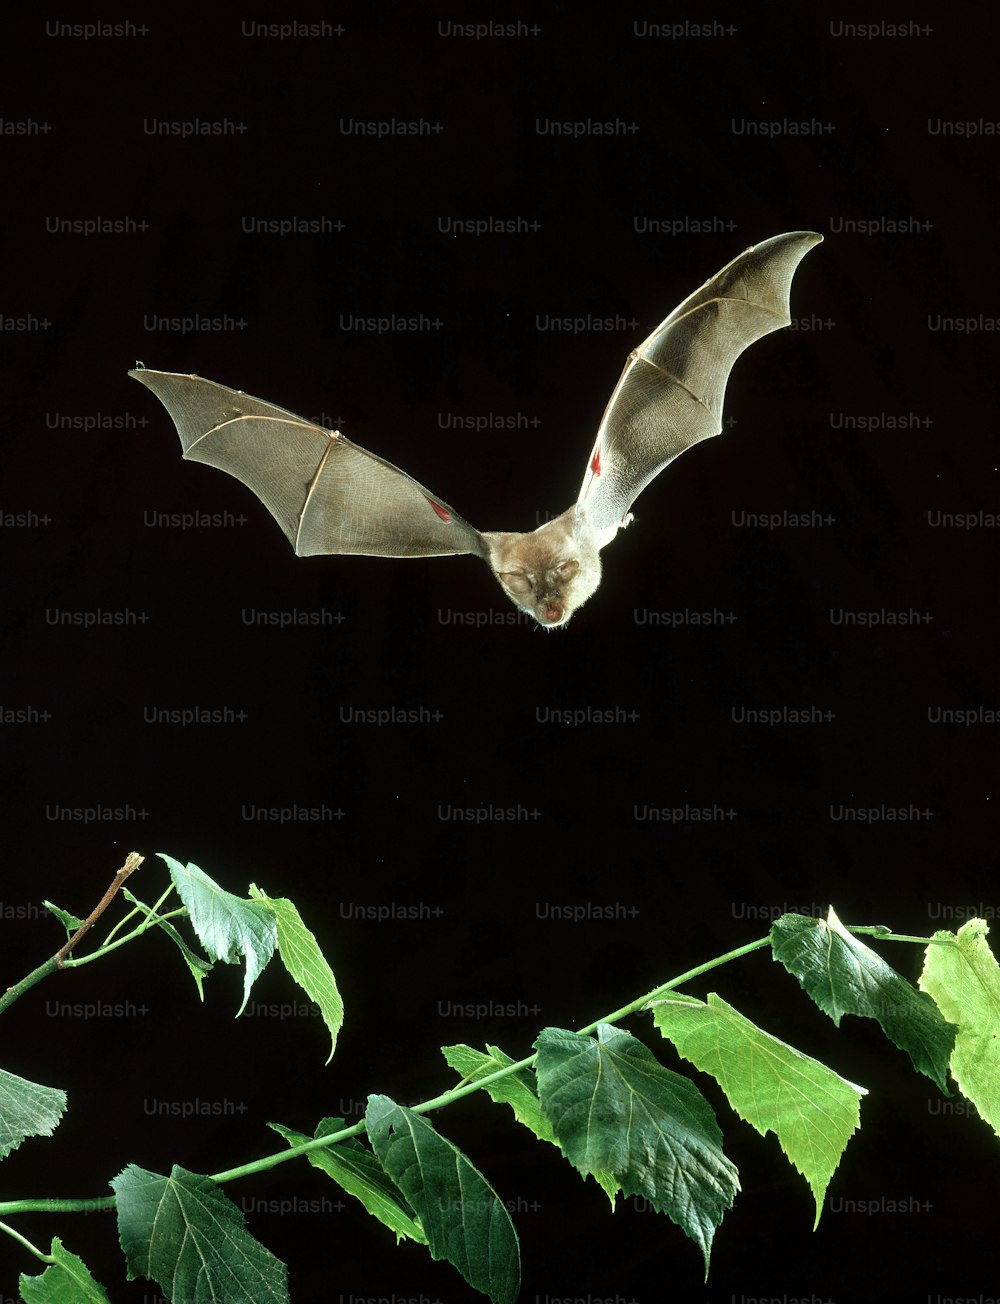 박쥐가 잎이 많은 식물 위를 날고 있습니다